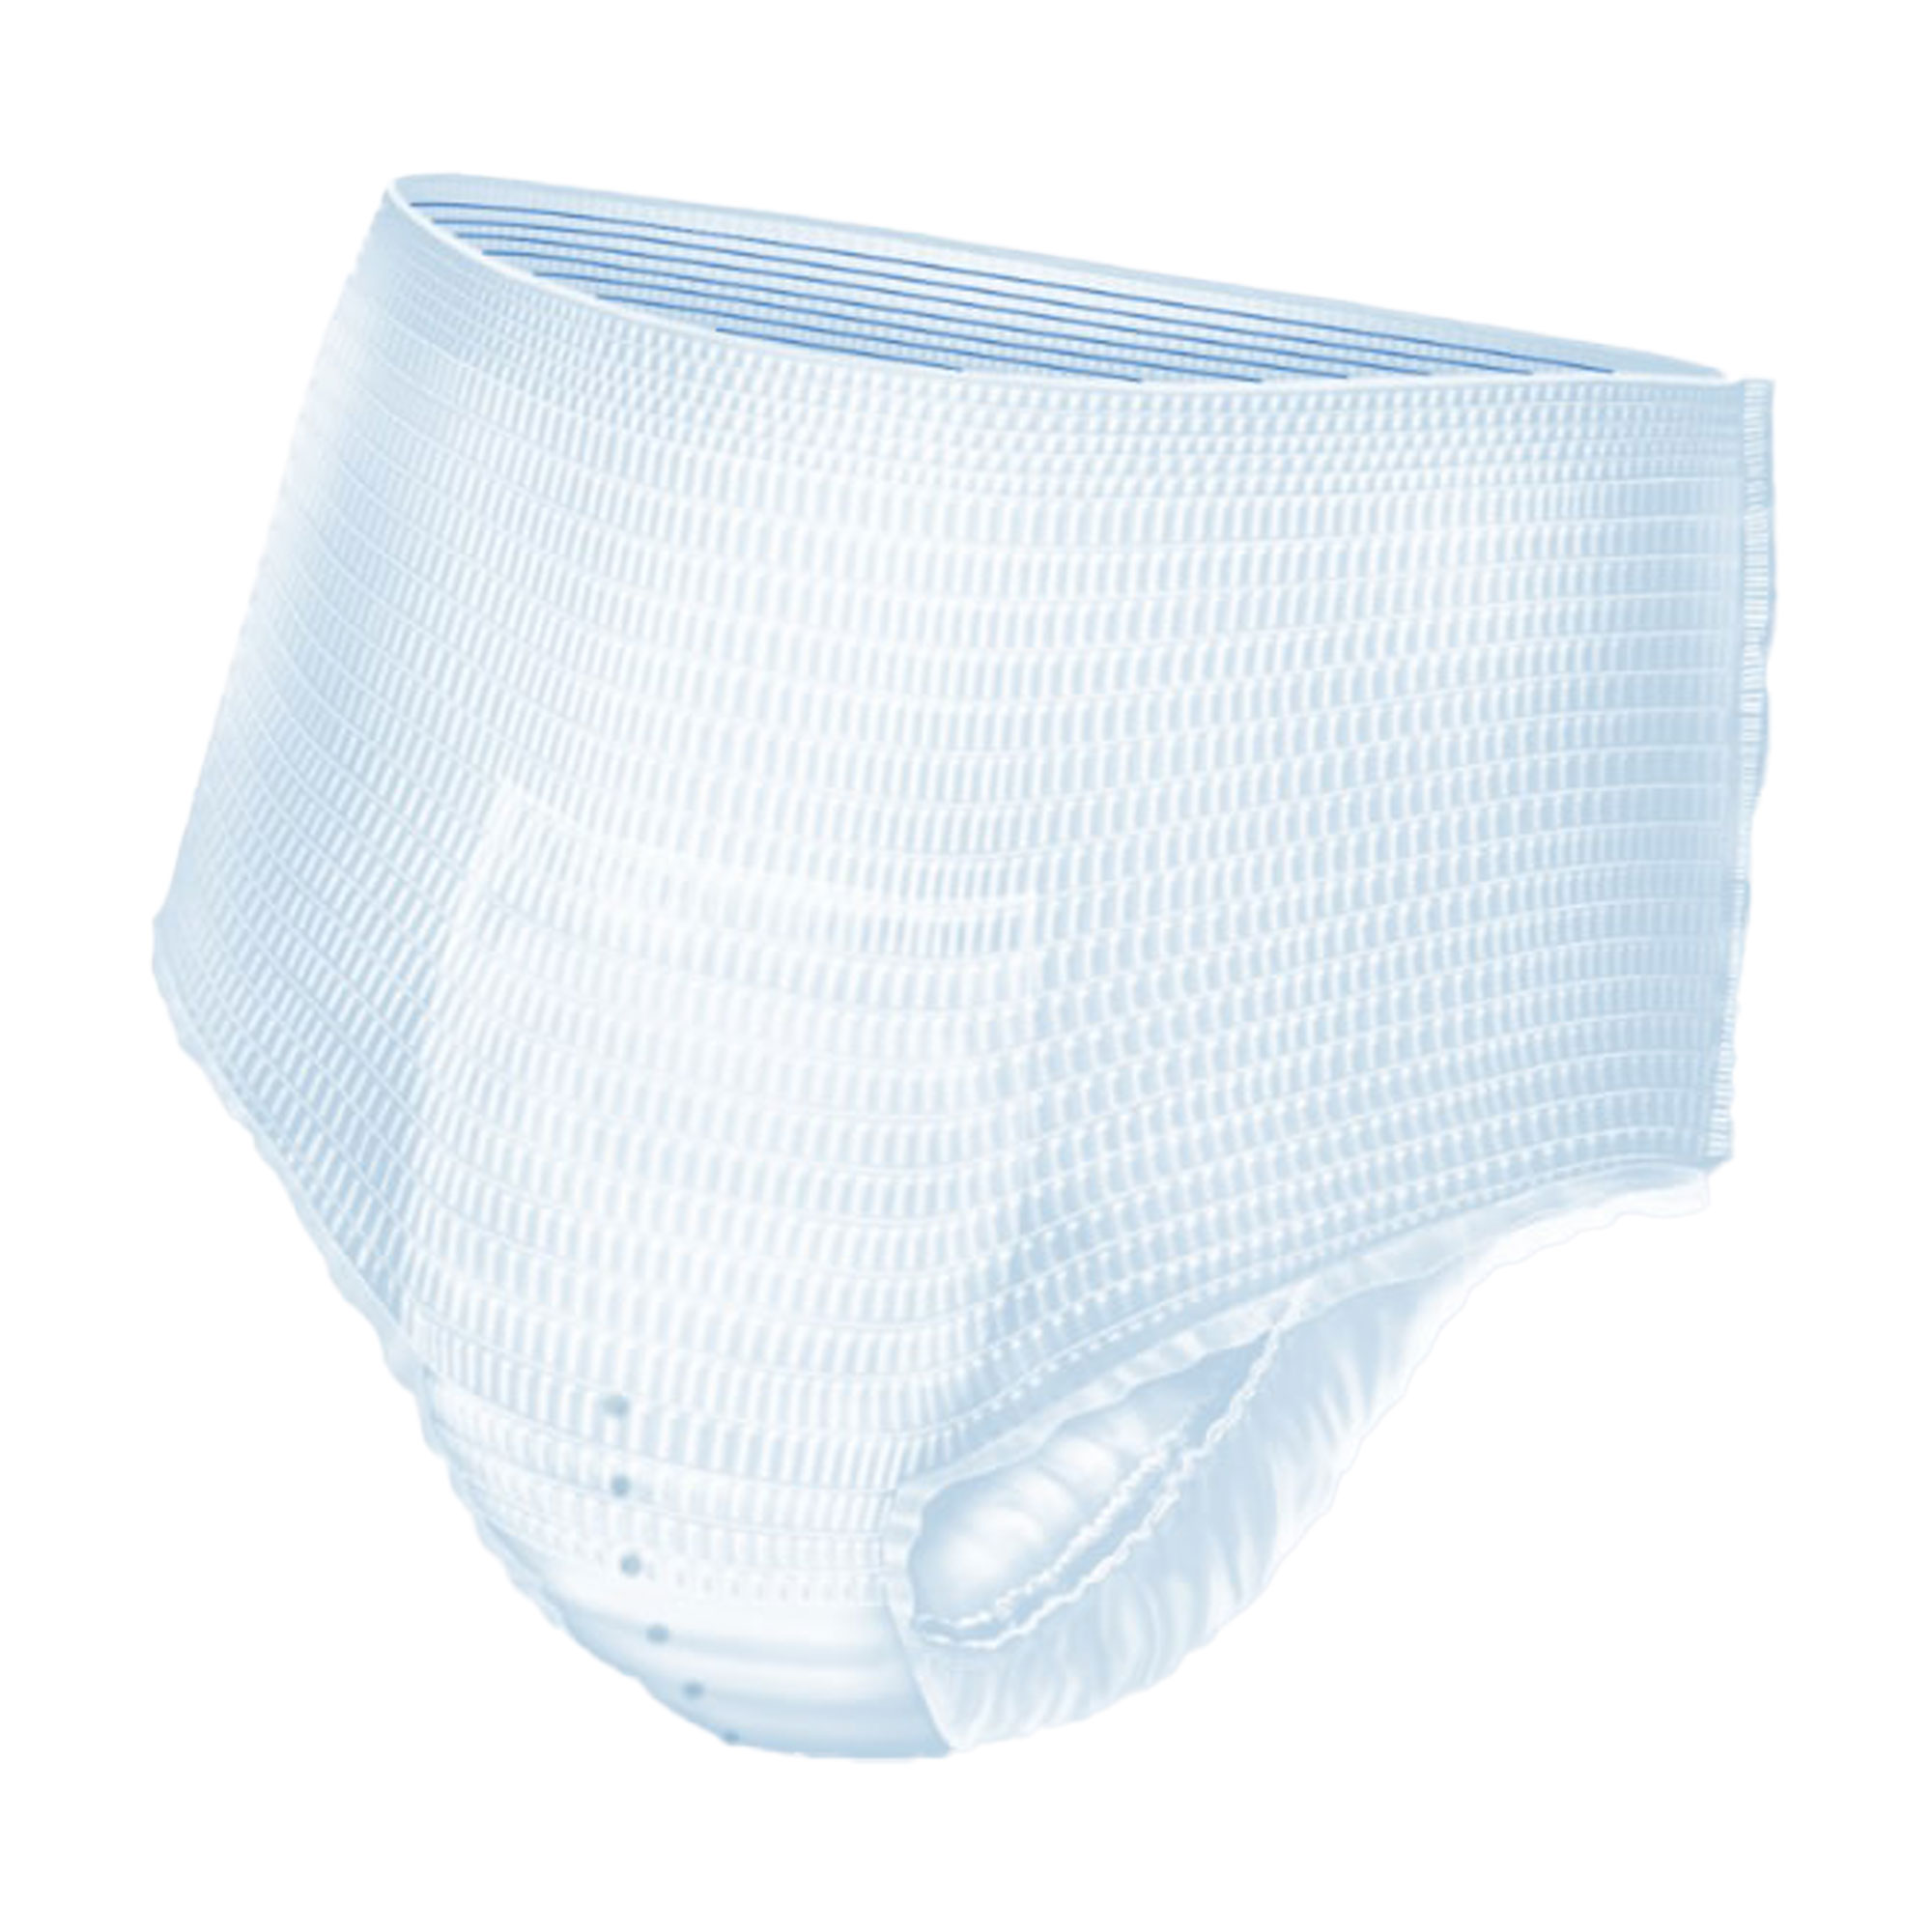 Einmal-Unterwäsche bei starker Inkontinenz. Für Frauen und Männer. Größe: XL.